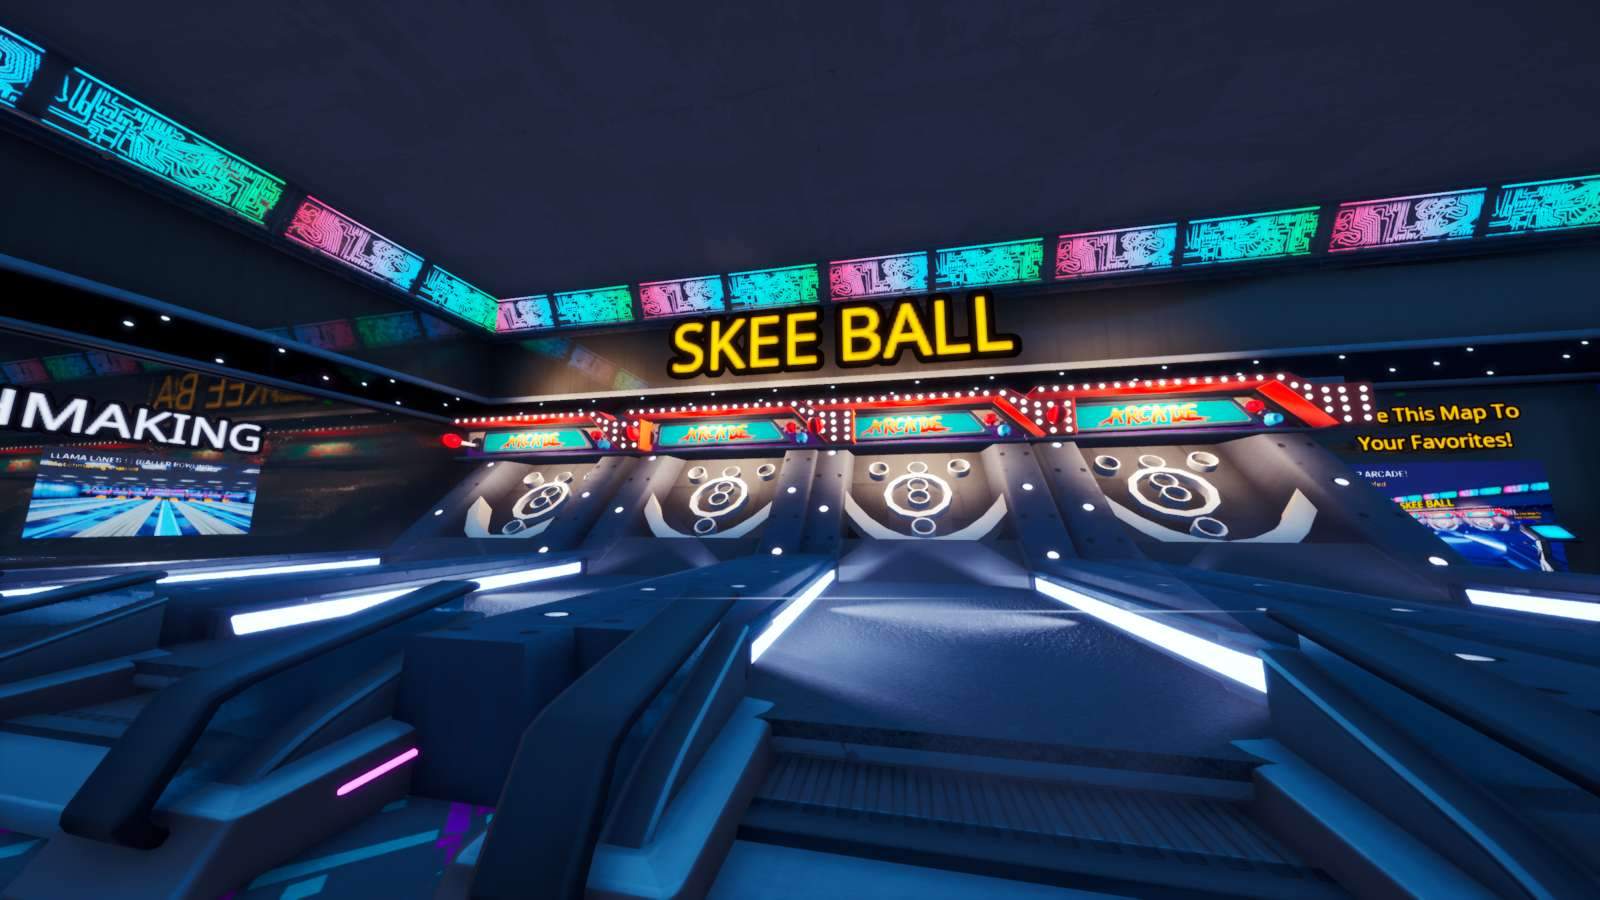 Skee Baller Arcade!